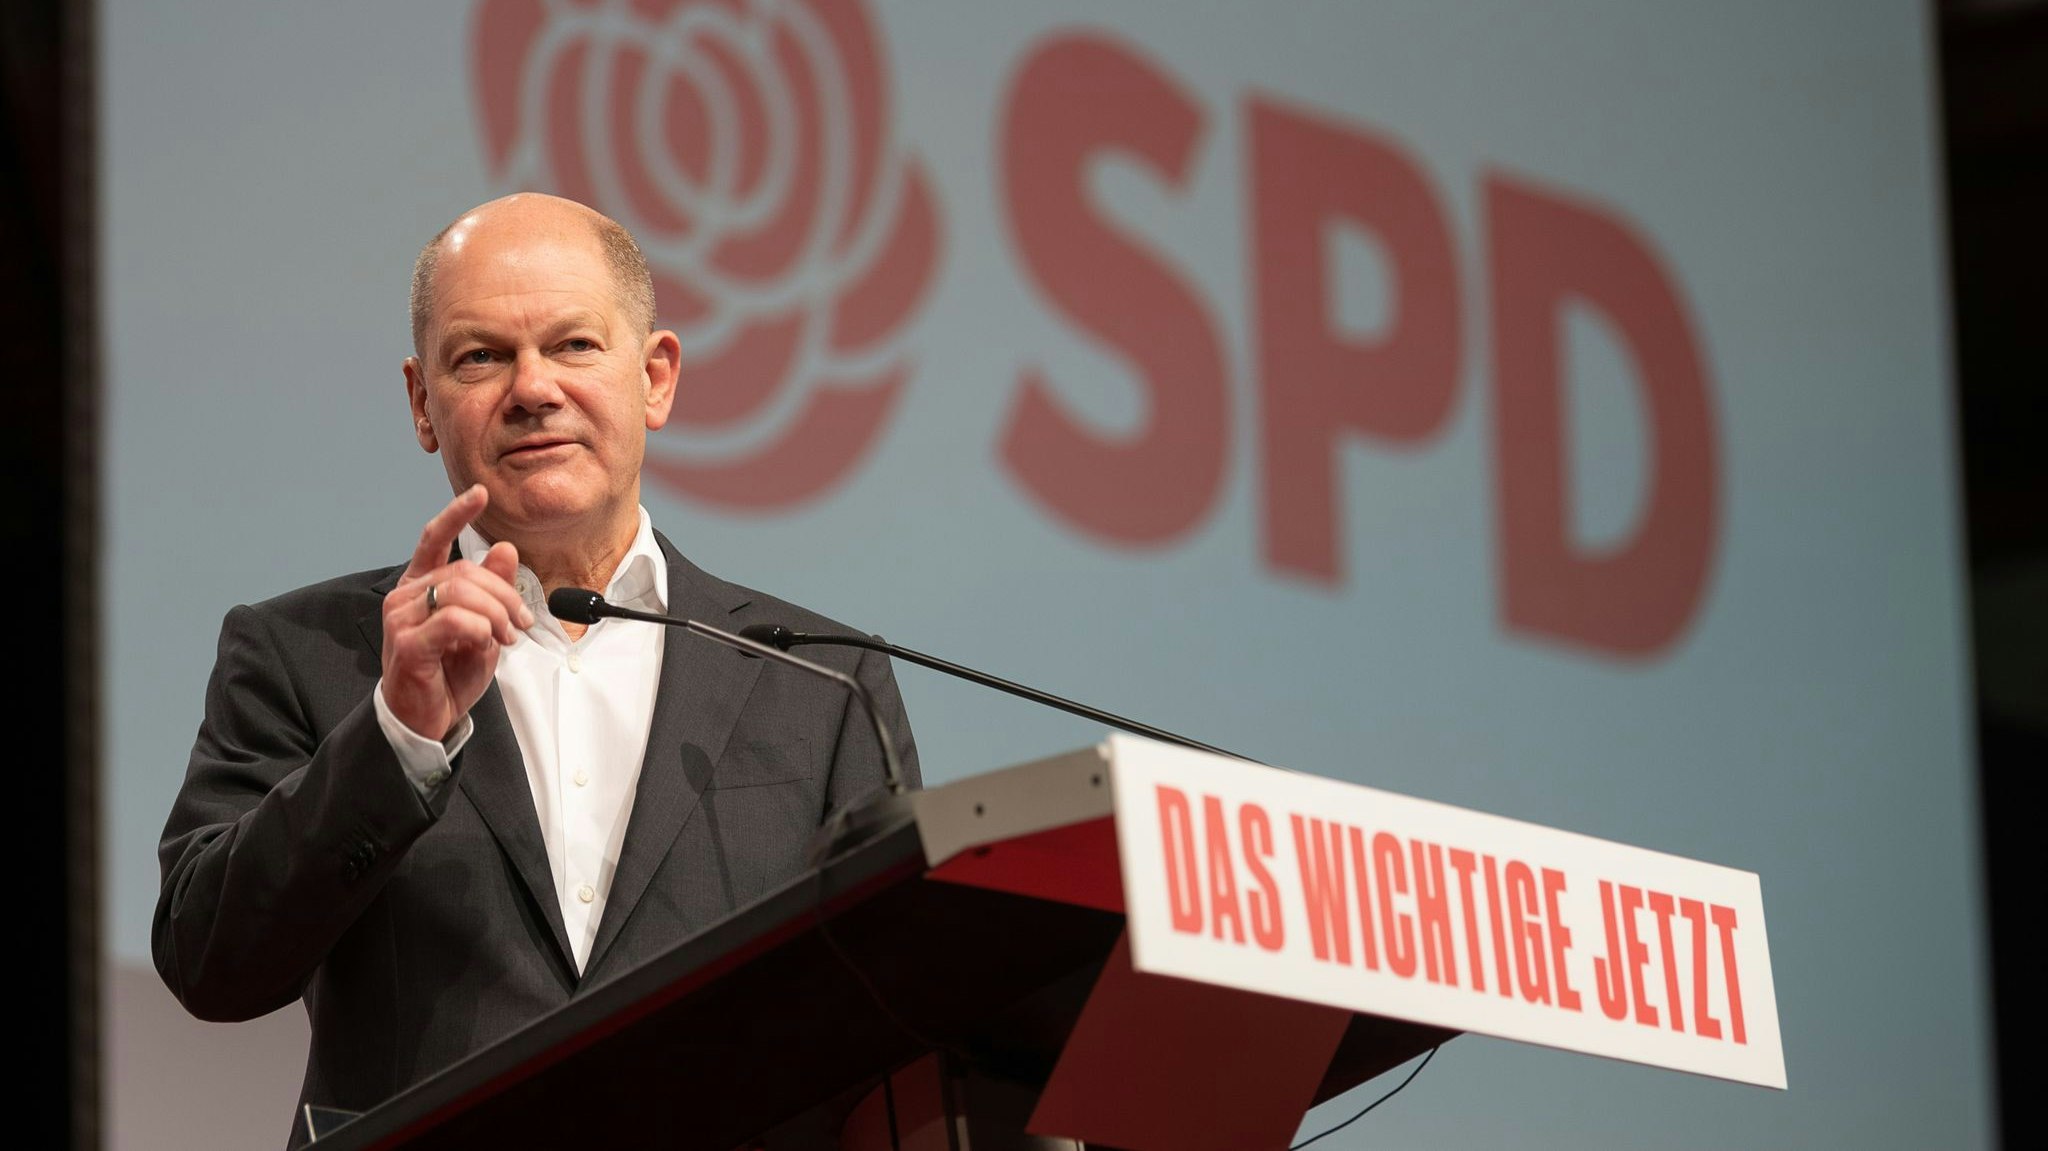 Verspricht weitere finanzielle Hilfen: Finanzminister Olaf Scholz (SPD). Foto: dpa/Gollnow